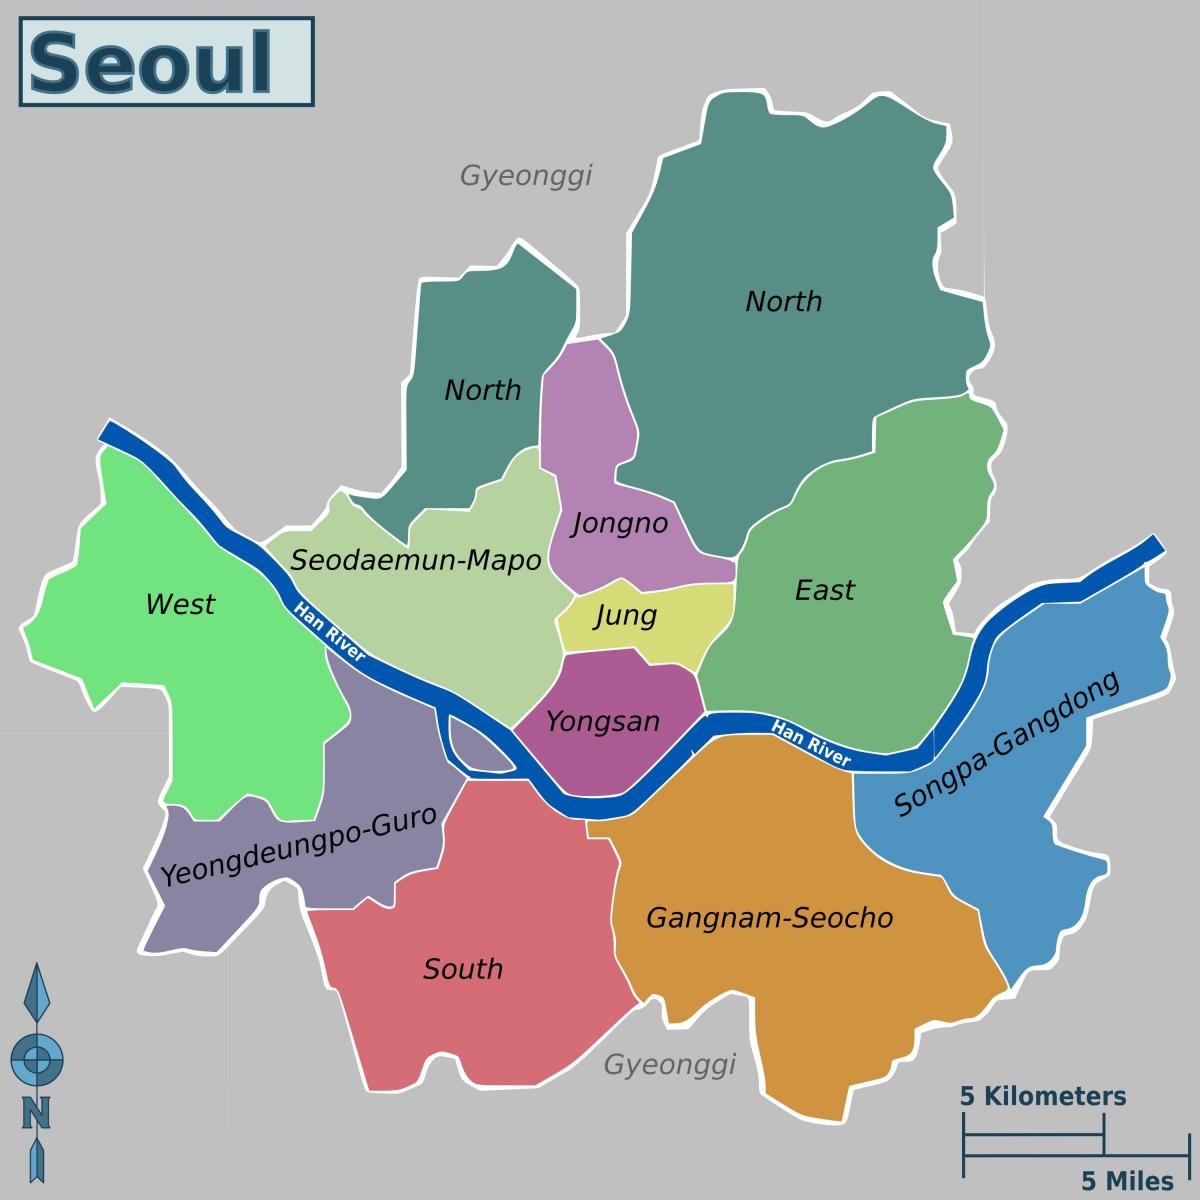 Mapa dos bairros de Seul